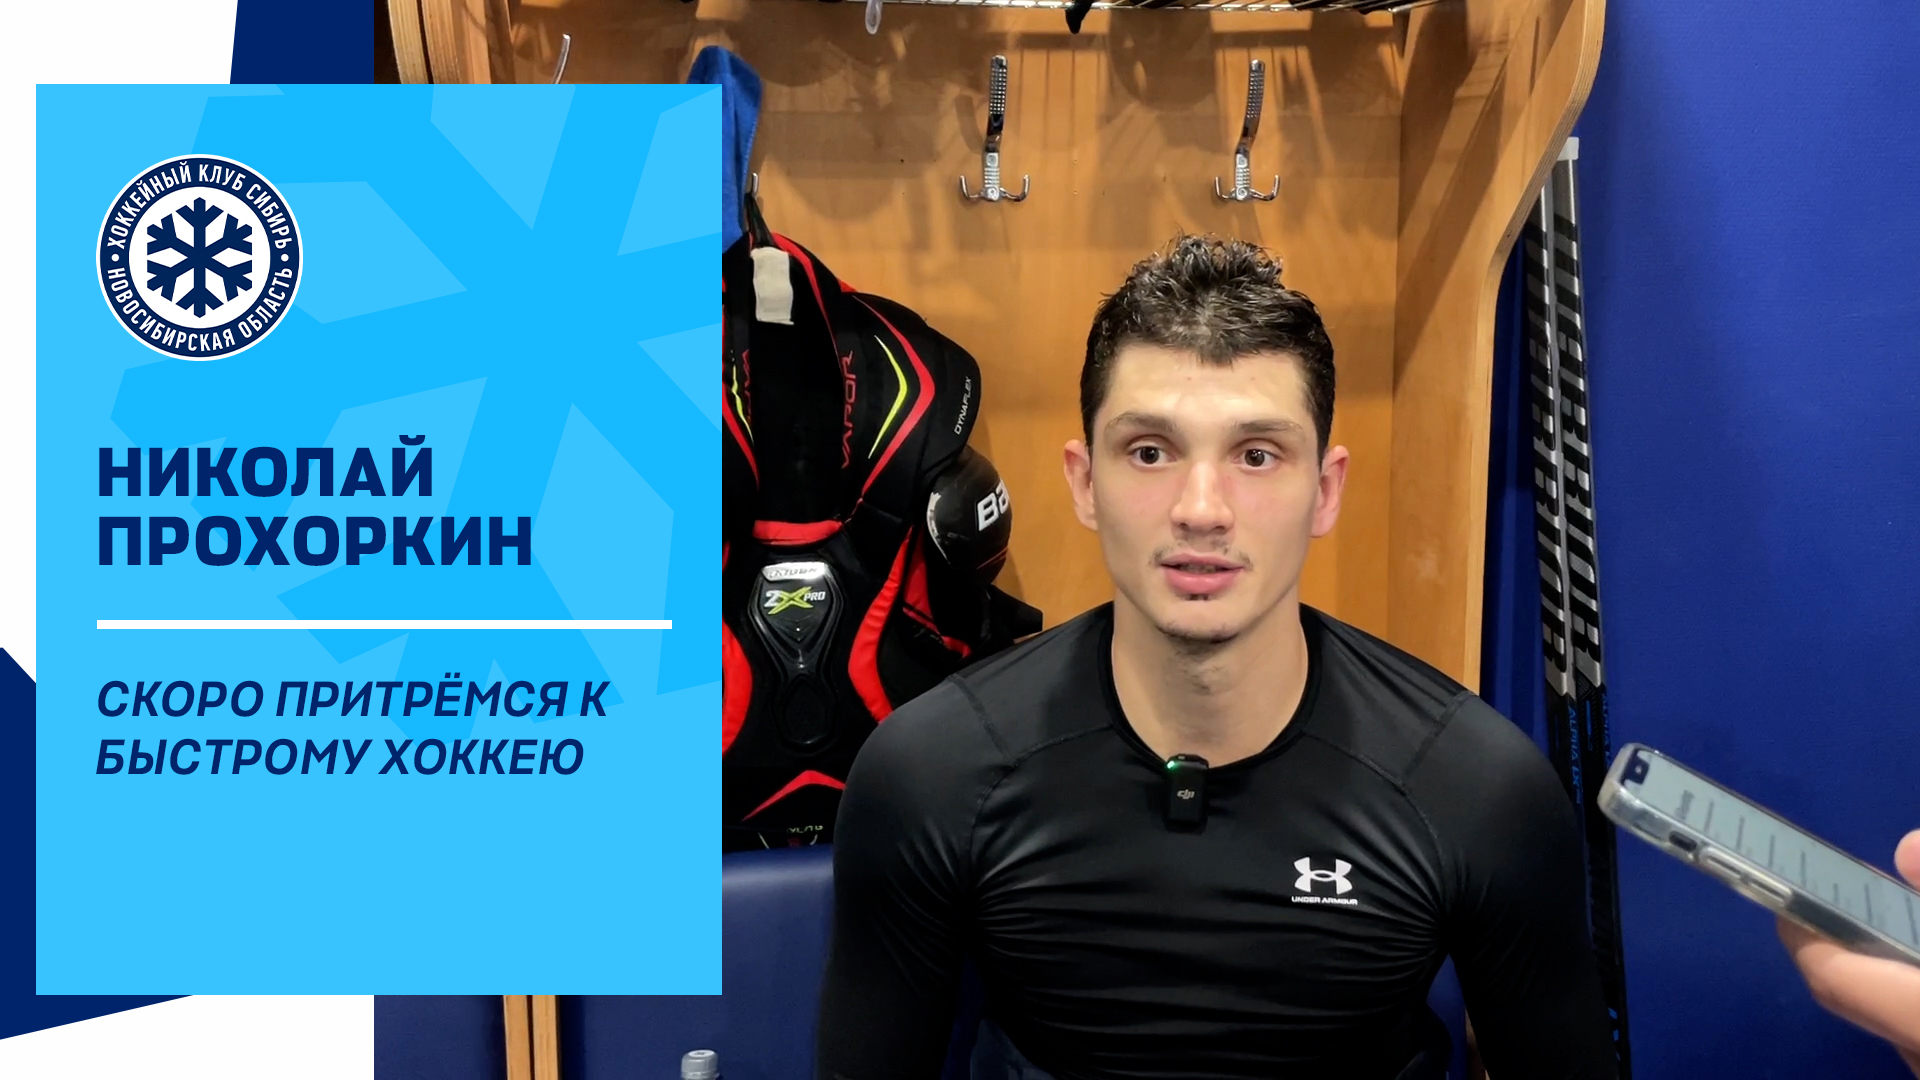 Николай Прохоркин: "Скоро притрёмся к быстрому хоккею"